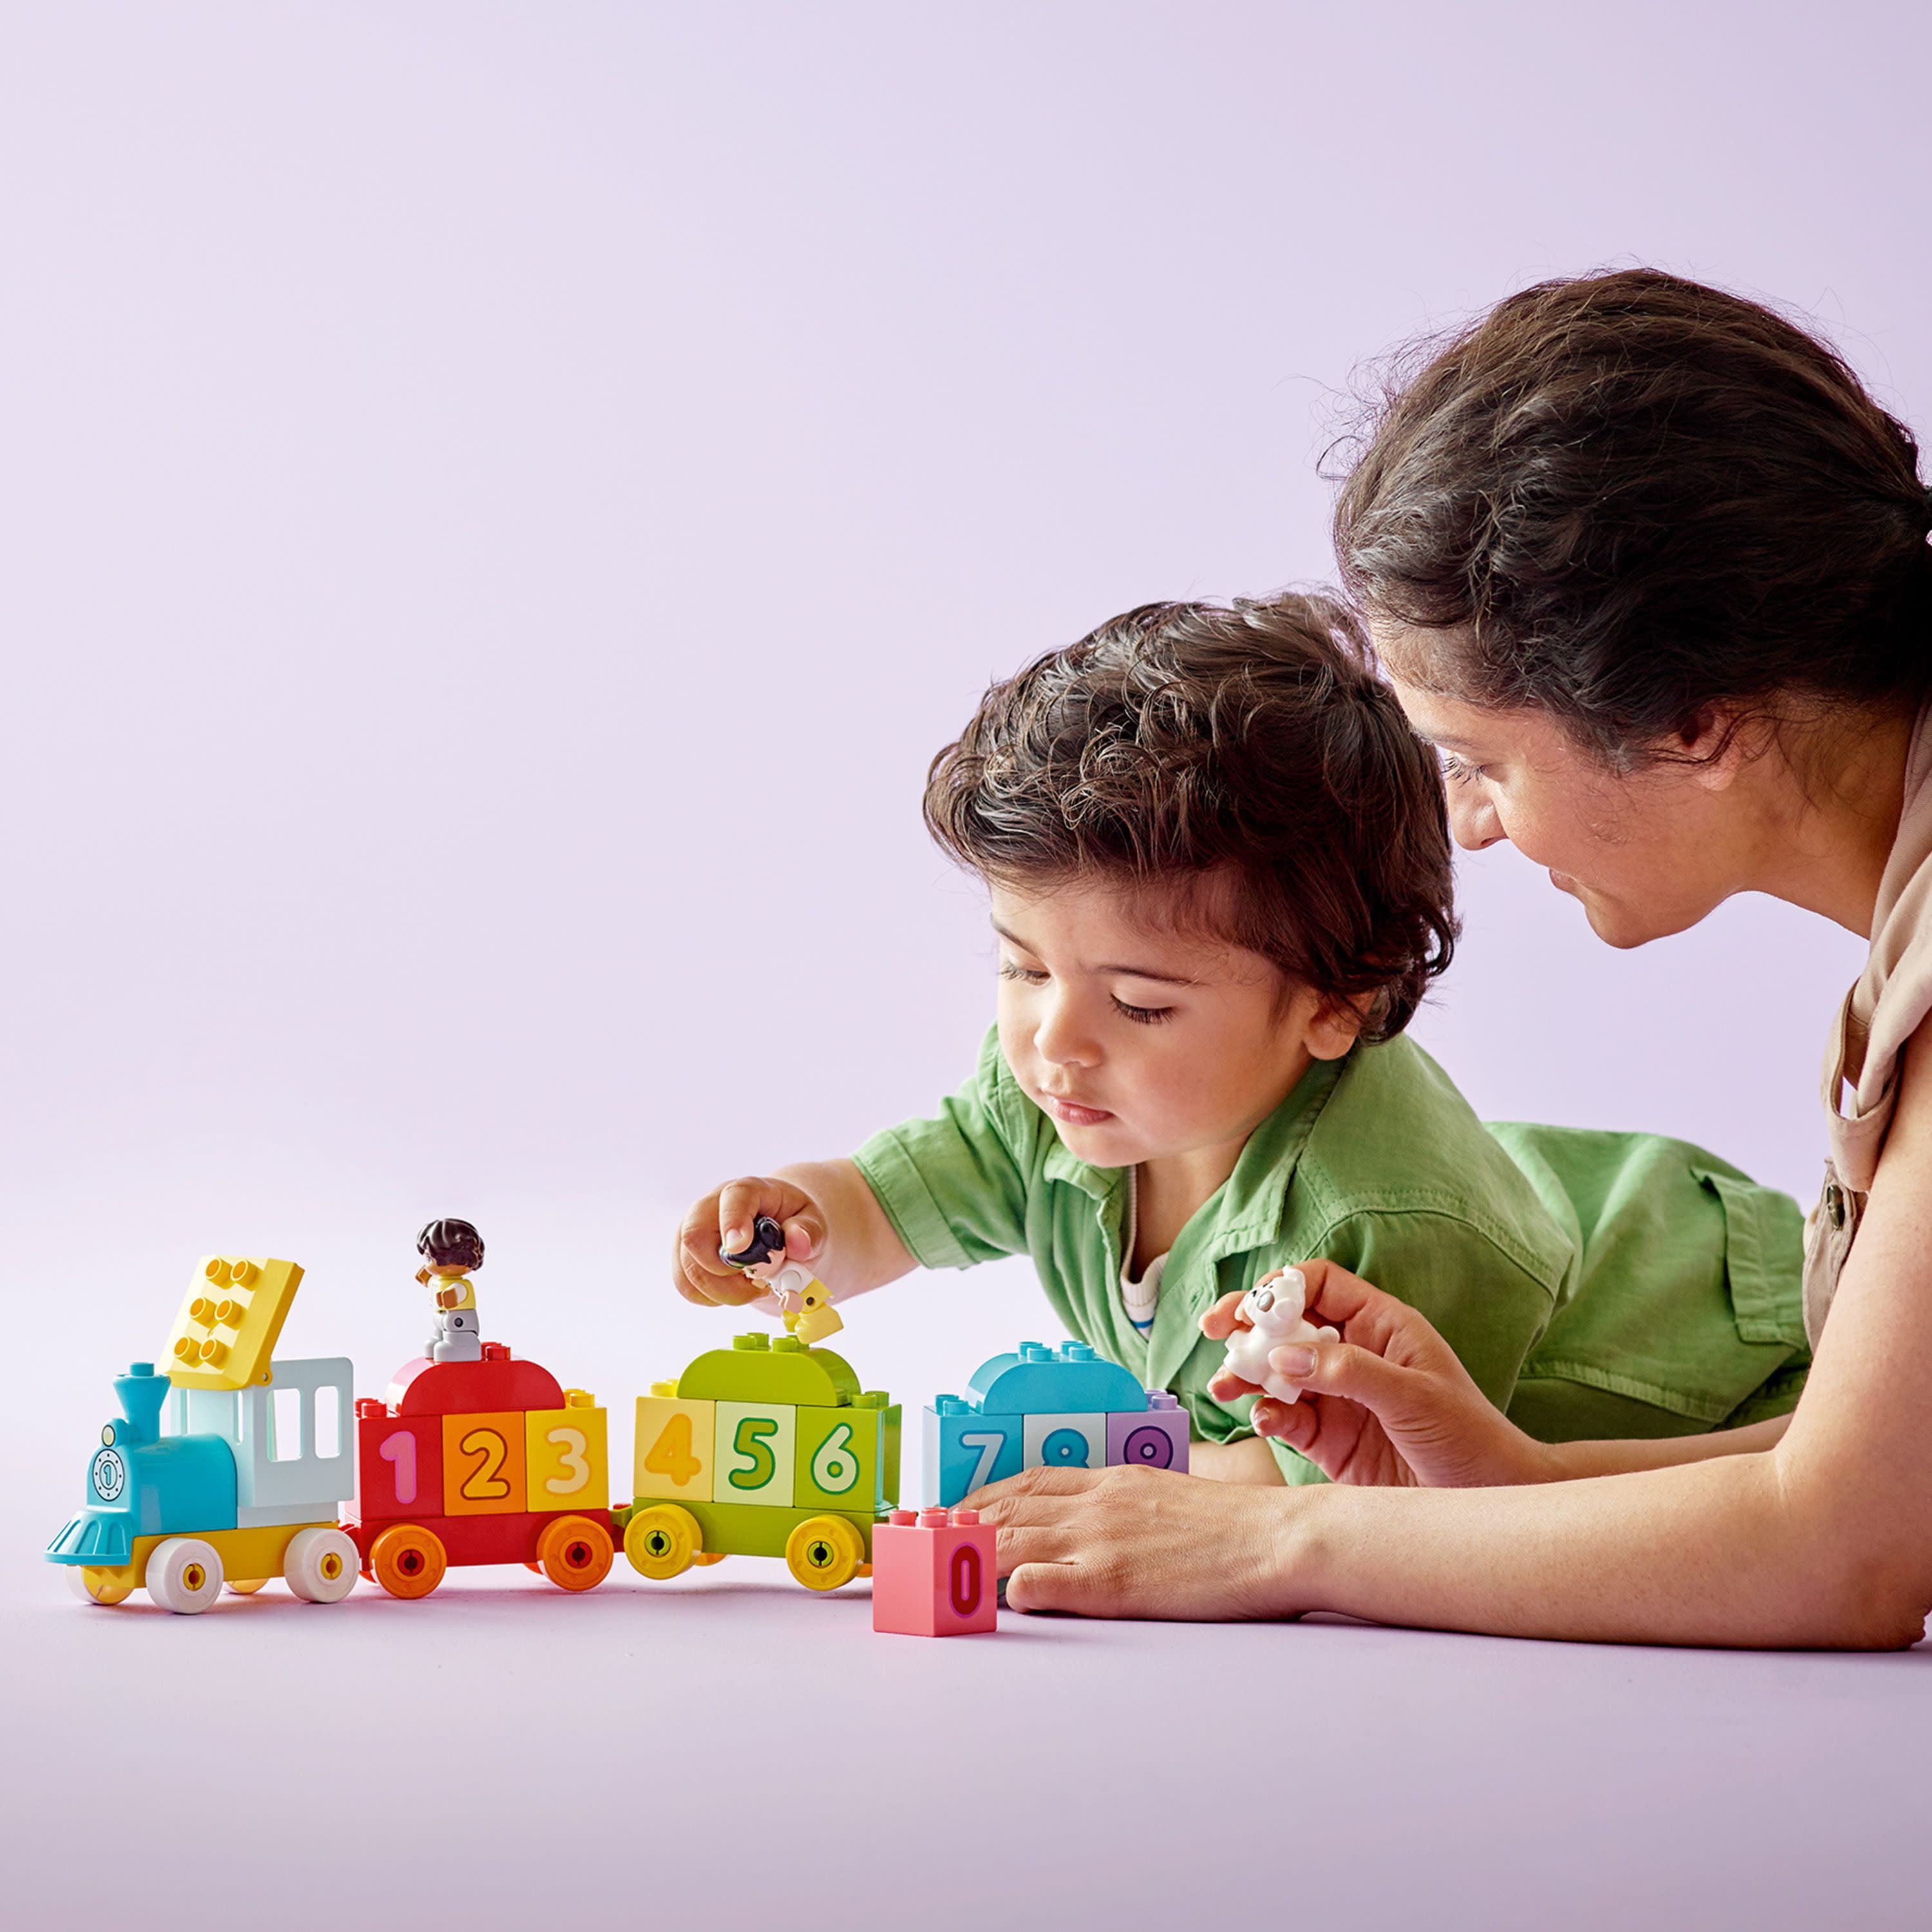 LEGO Duplo My First Il Treno dei Numeri, Giochi Educativi Didattici, Grandi  Mattoncini Numerati, Giocattolo per Bambino e Bambina di 1.5+ Anni, 10847 –  Giochi e Prodotti per l'Età Evolutiva